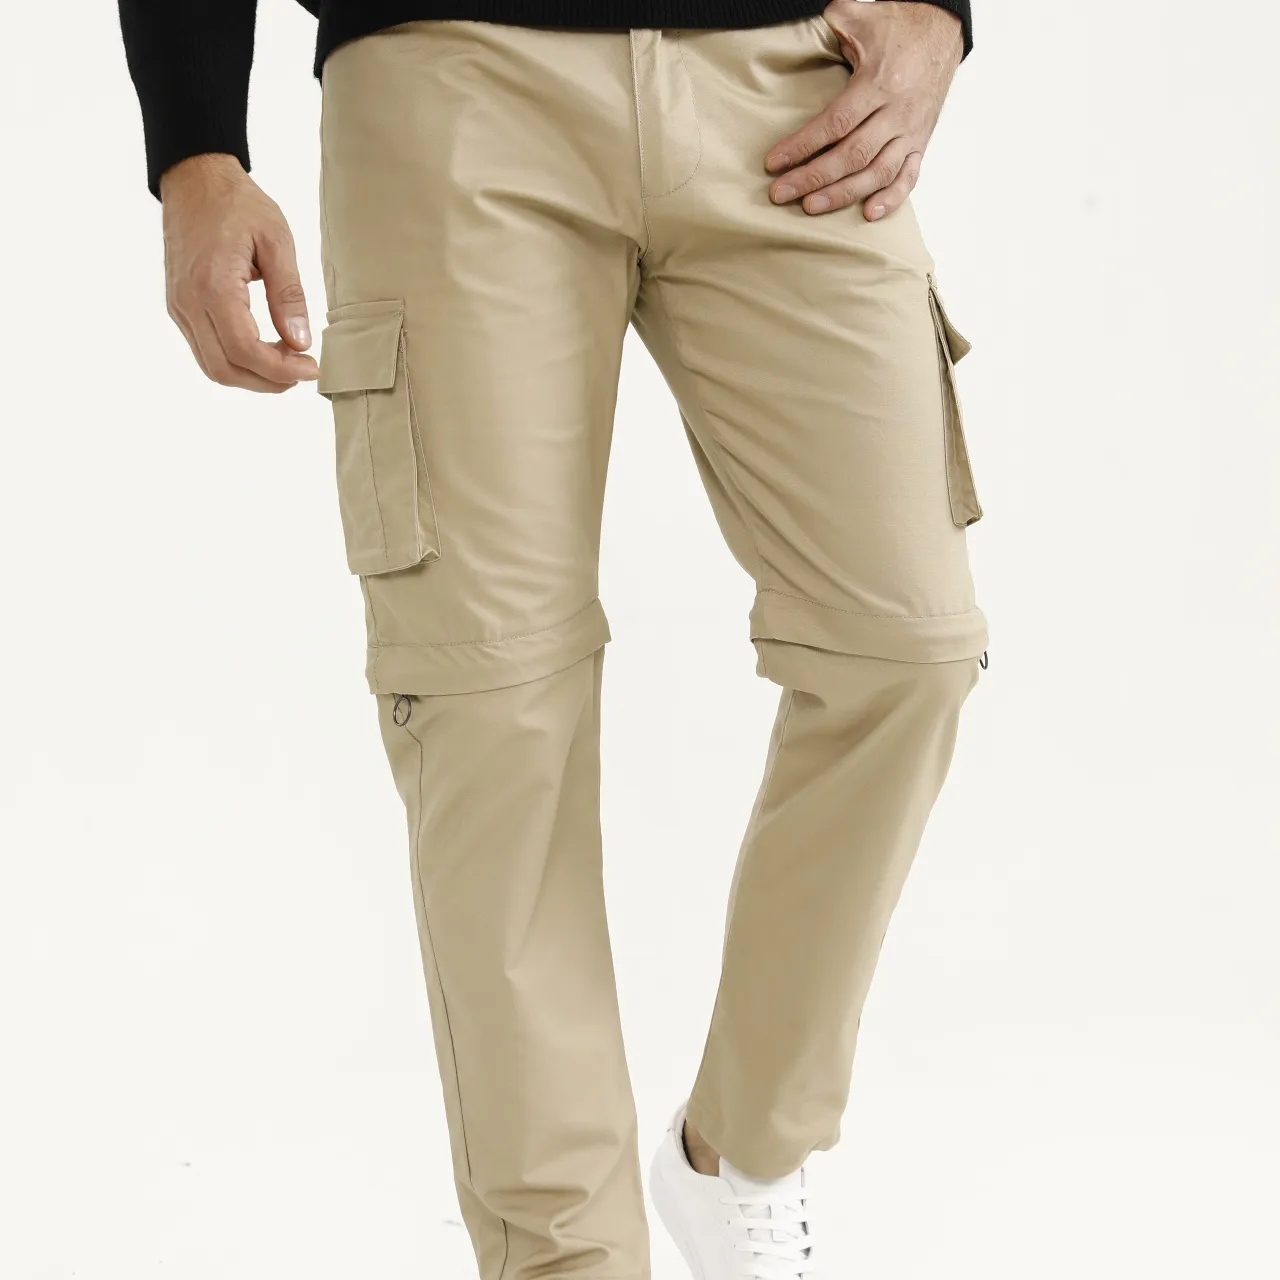 Pantalon cargo kaki pour hommes, nouvelle vente en gros, poche sur les jambes et les cuisses, pantalon de travail vert armée